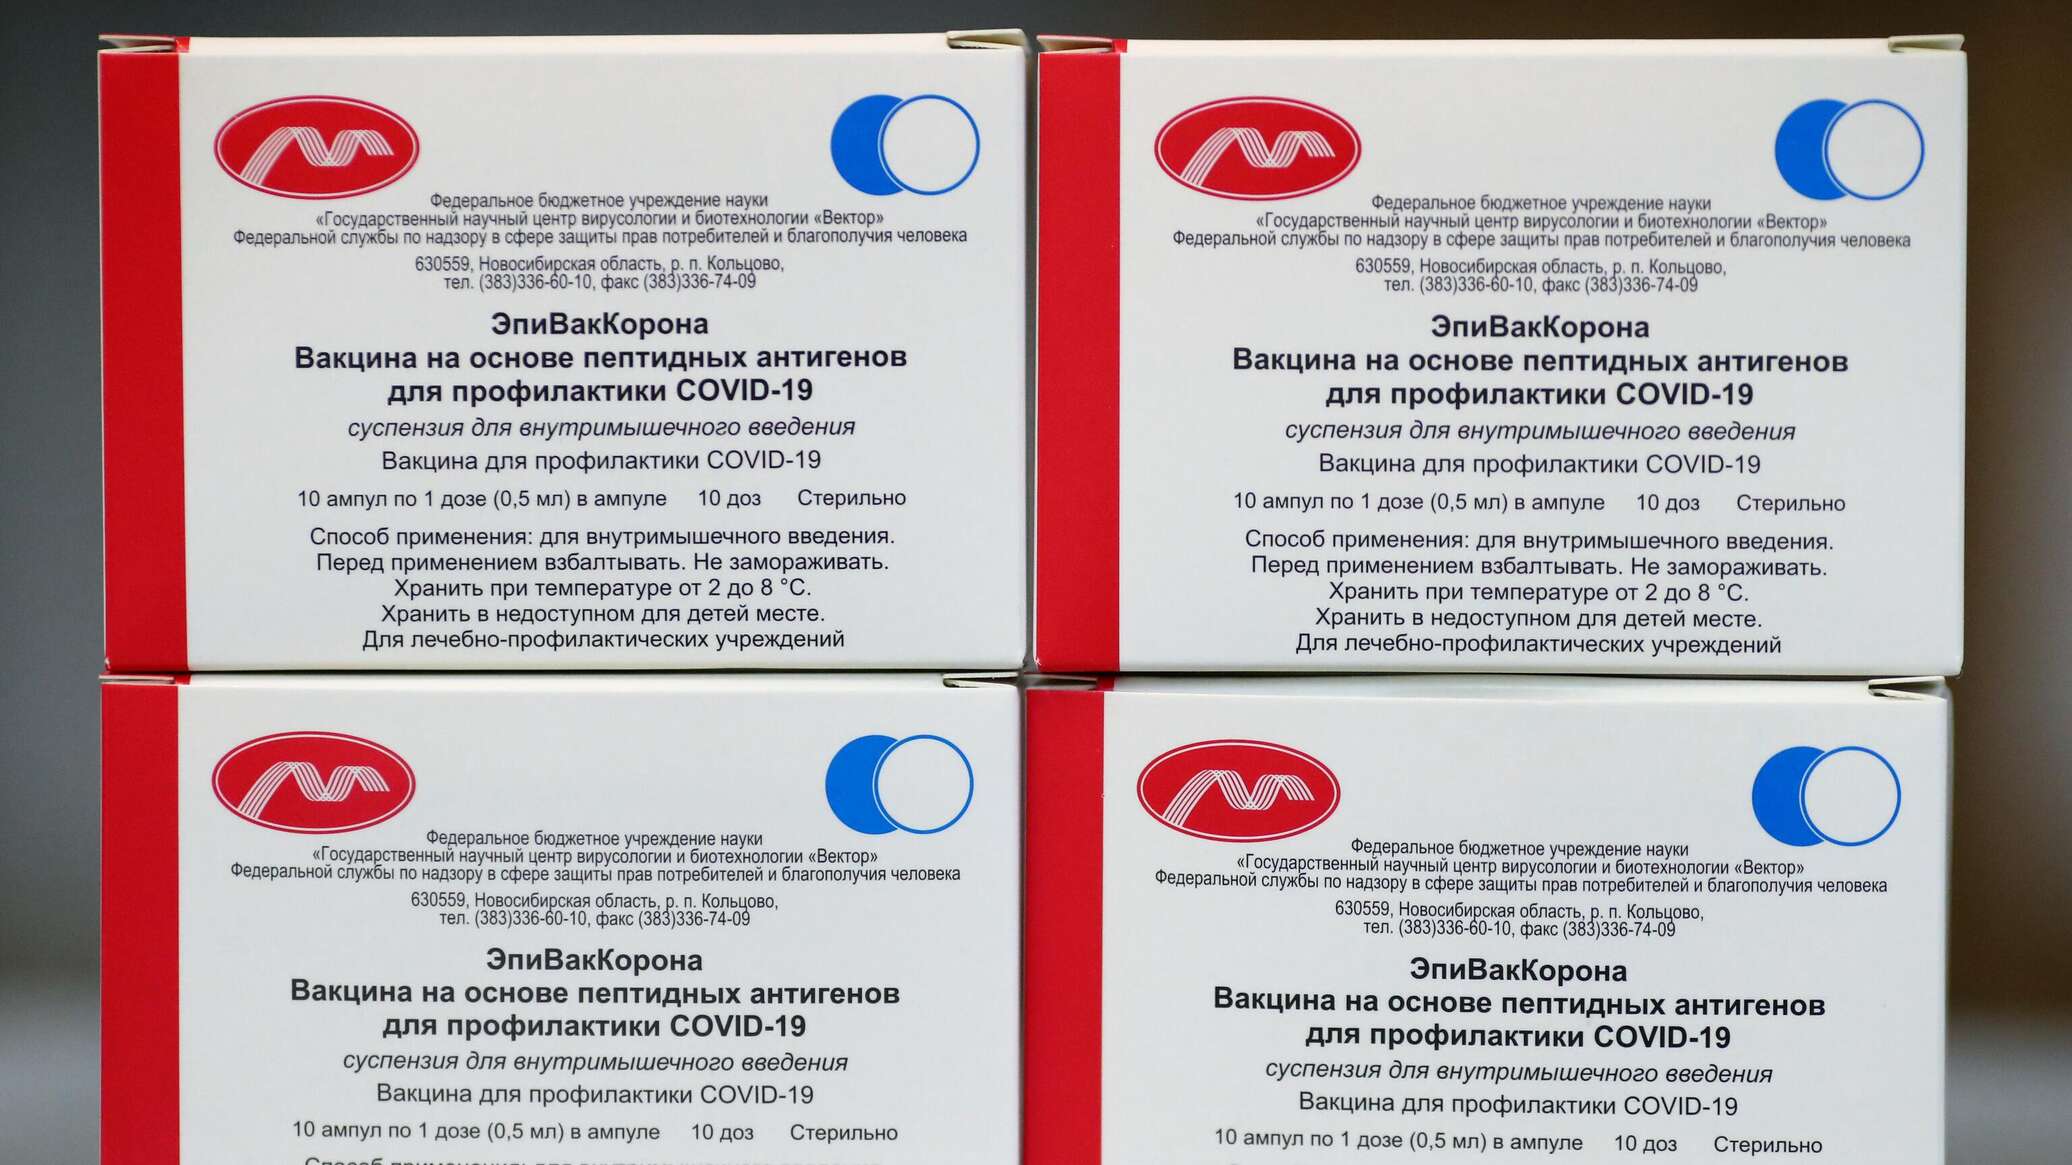 Первые вакцины от коронавируса. Эпиваккорона вакцина. Вакцина на основе пептидных антигенов («эпиваккорона»). Вакцинация от коронавируса вакцины. Производители вакцины от коронавируса в России.